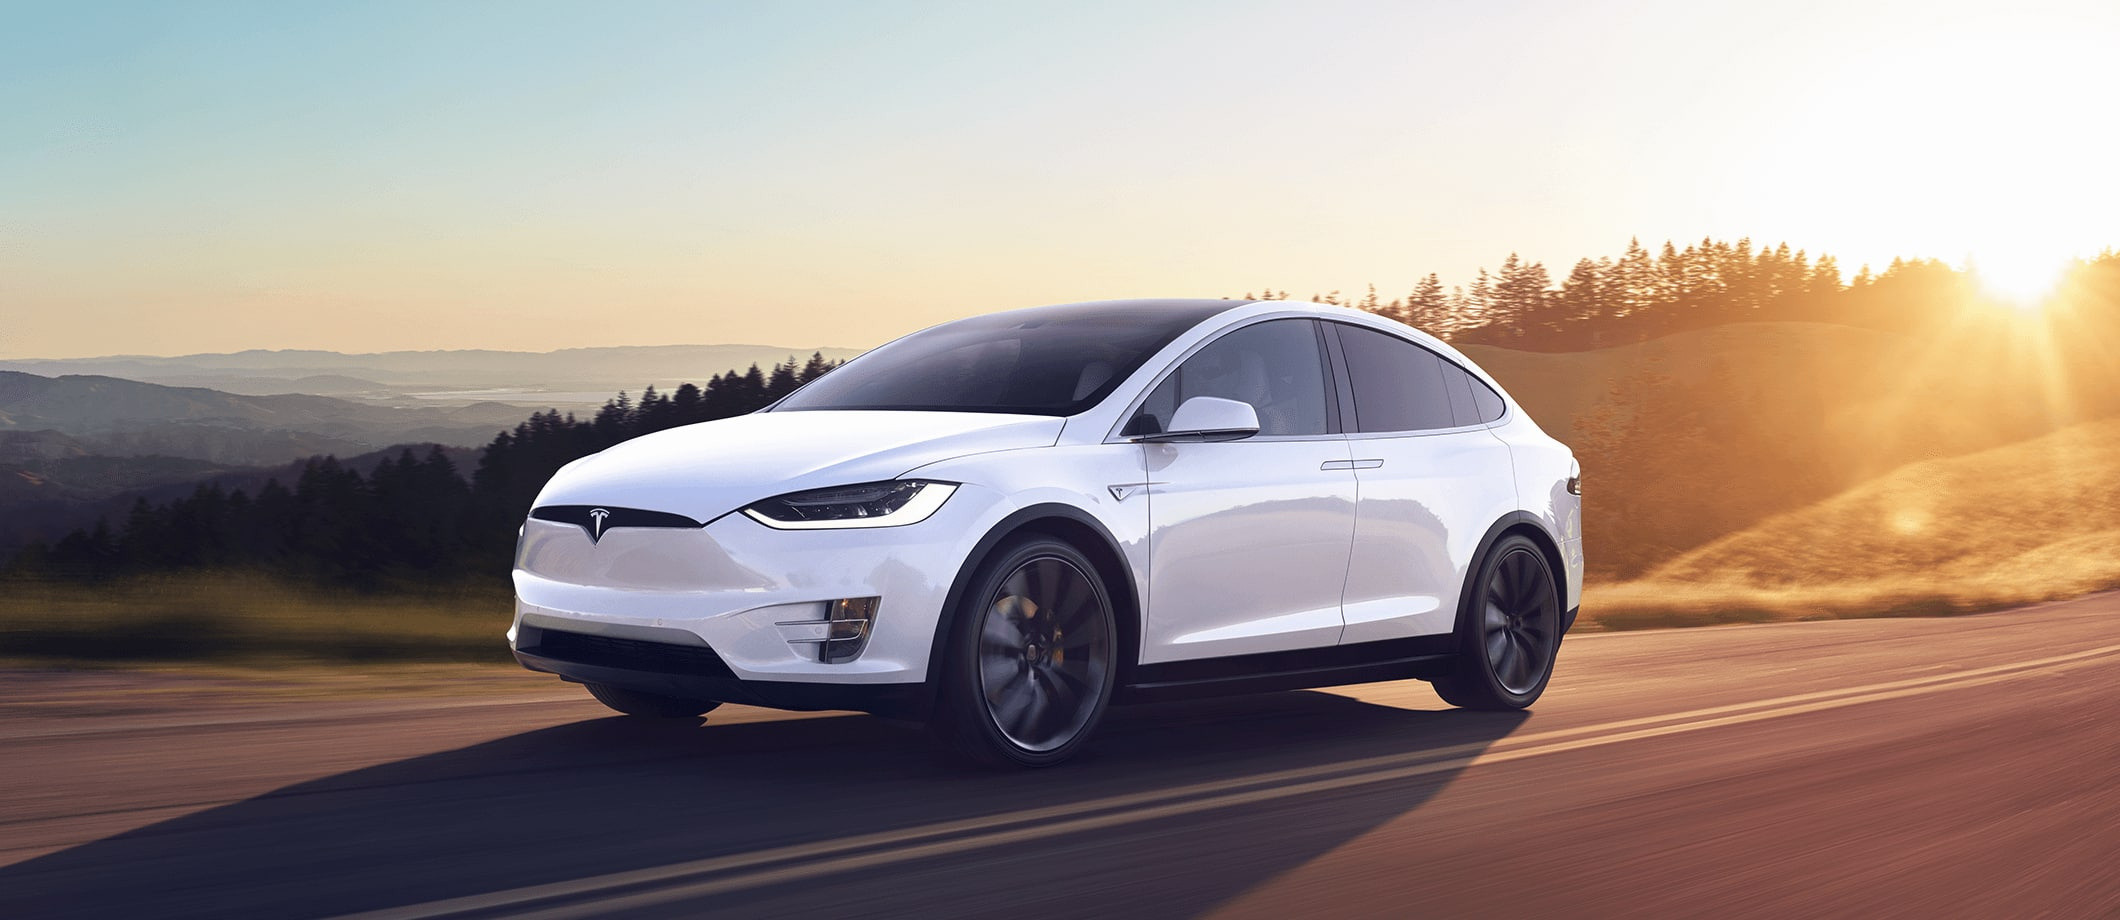 Tesla-Model-X-Tesla-Electric-Vehicle